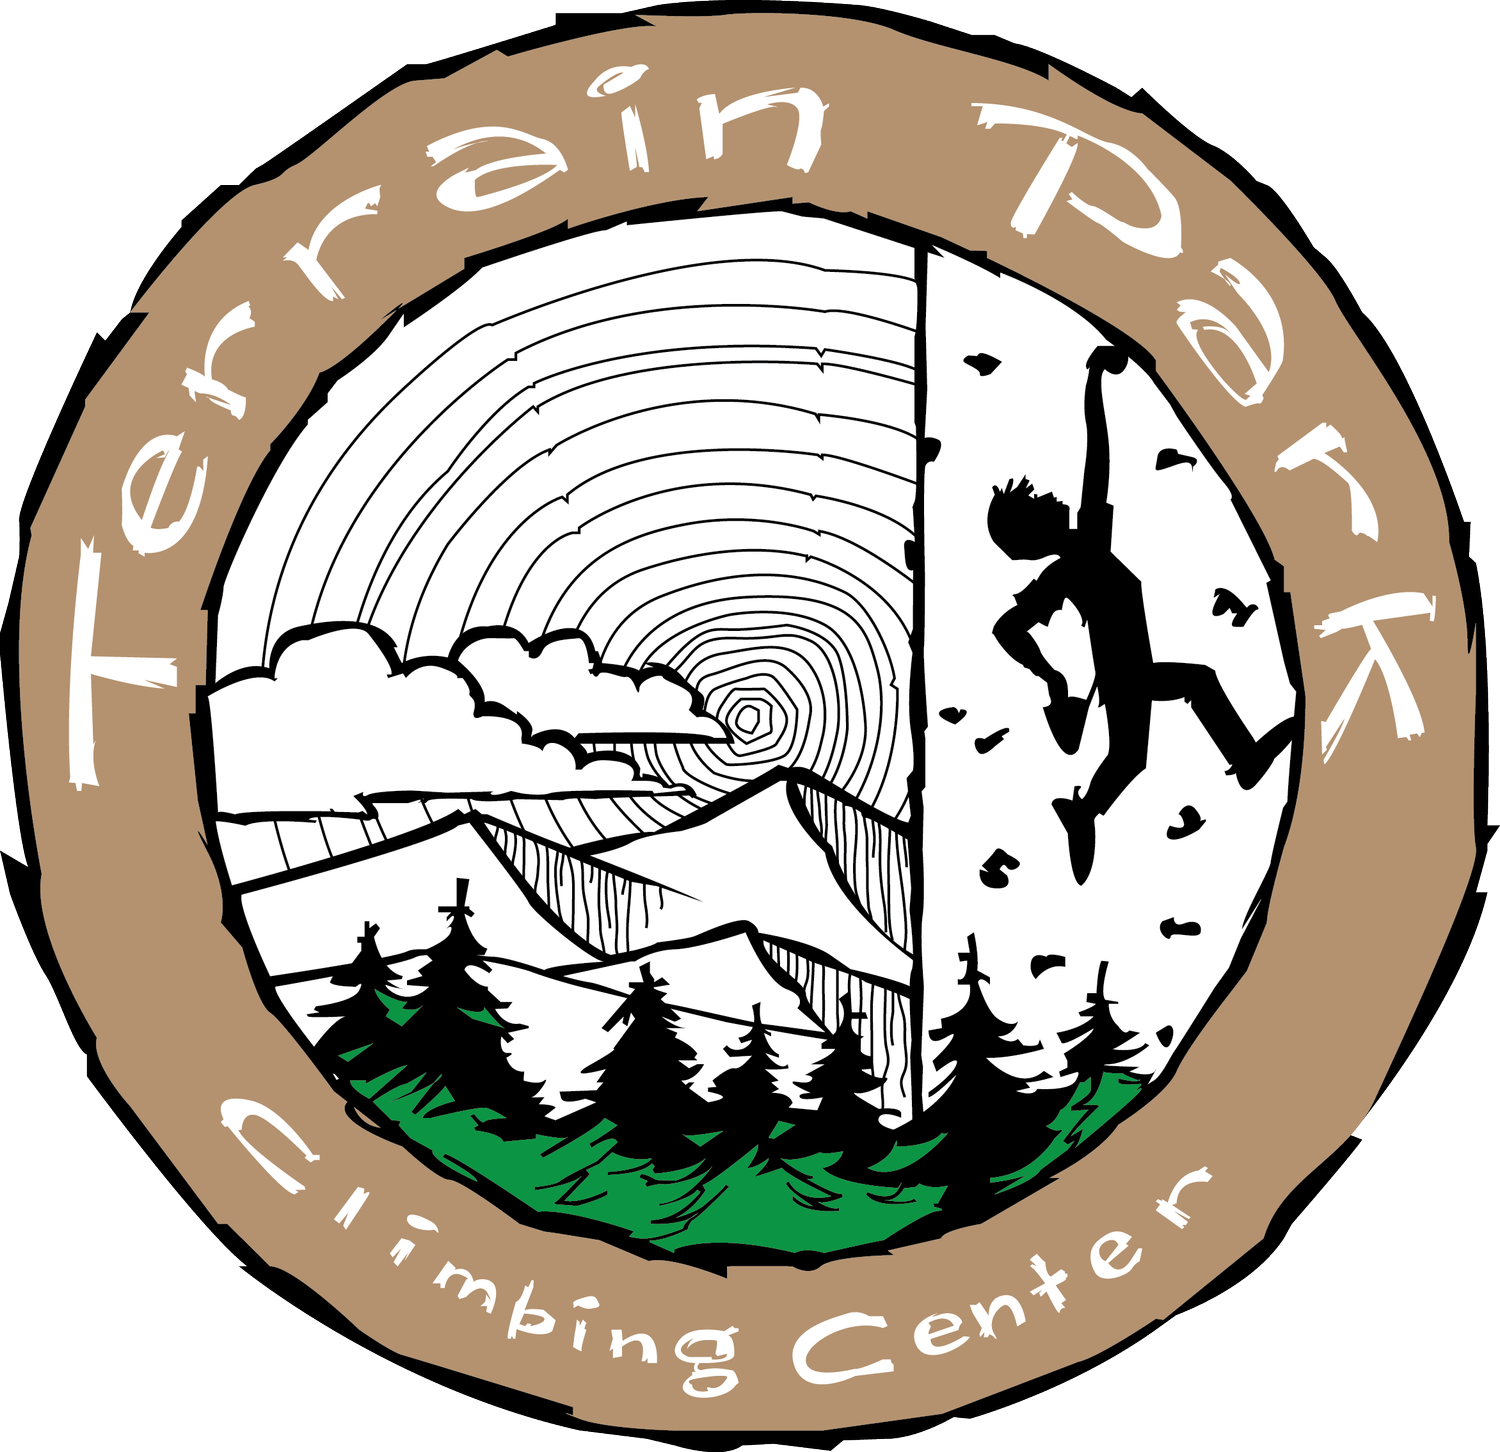 Terrain Park Climbing Center